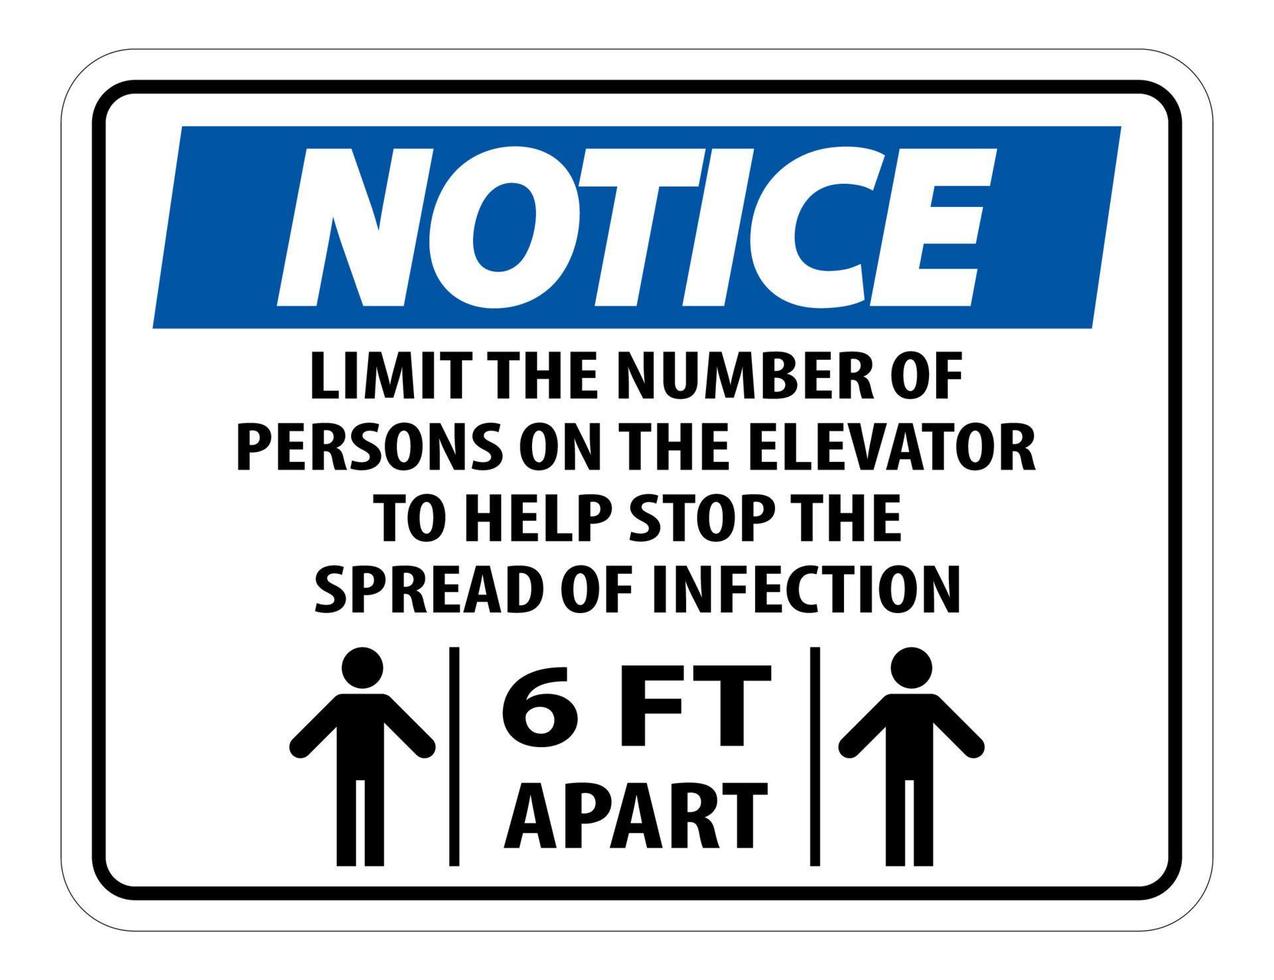 Signe de l'éloignement physique ascenseur ascenseur isoler sur fond blanc, illustration vectorielle eps.10 vecteur